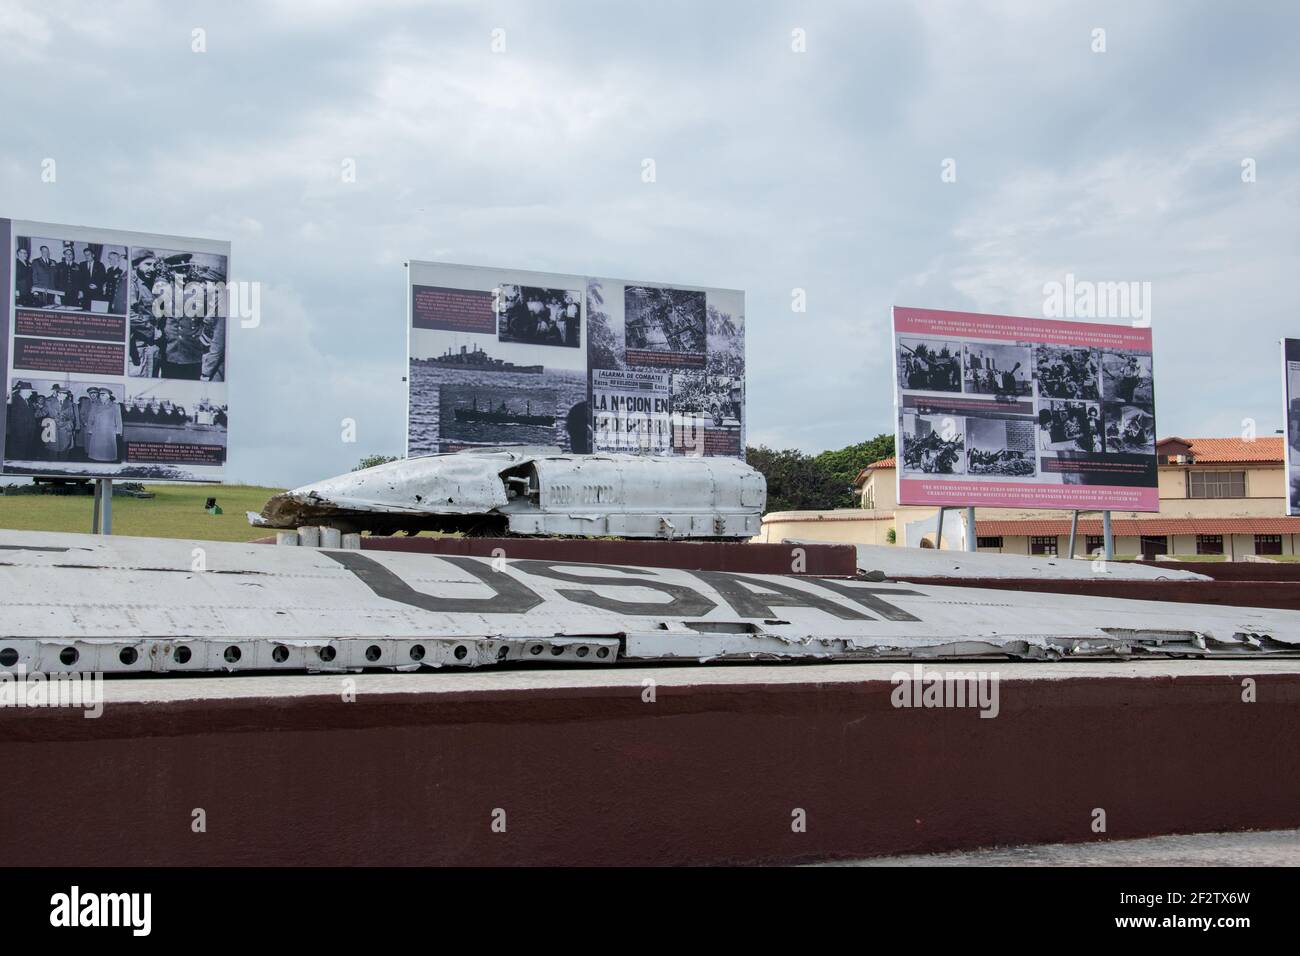 Flügel und Rumpf aus einem Flugzeug der US-Luftwaffe im Militärhistorischen Museum und Ausstellung aus der Kubanischen Raketenkrise, Havanna, Kuba. Stockfoto